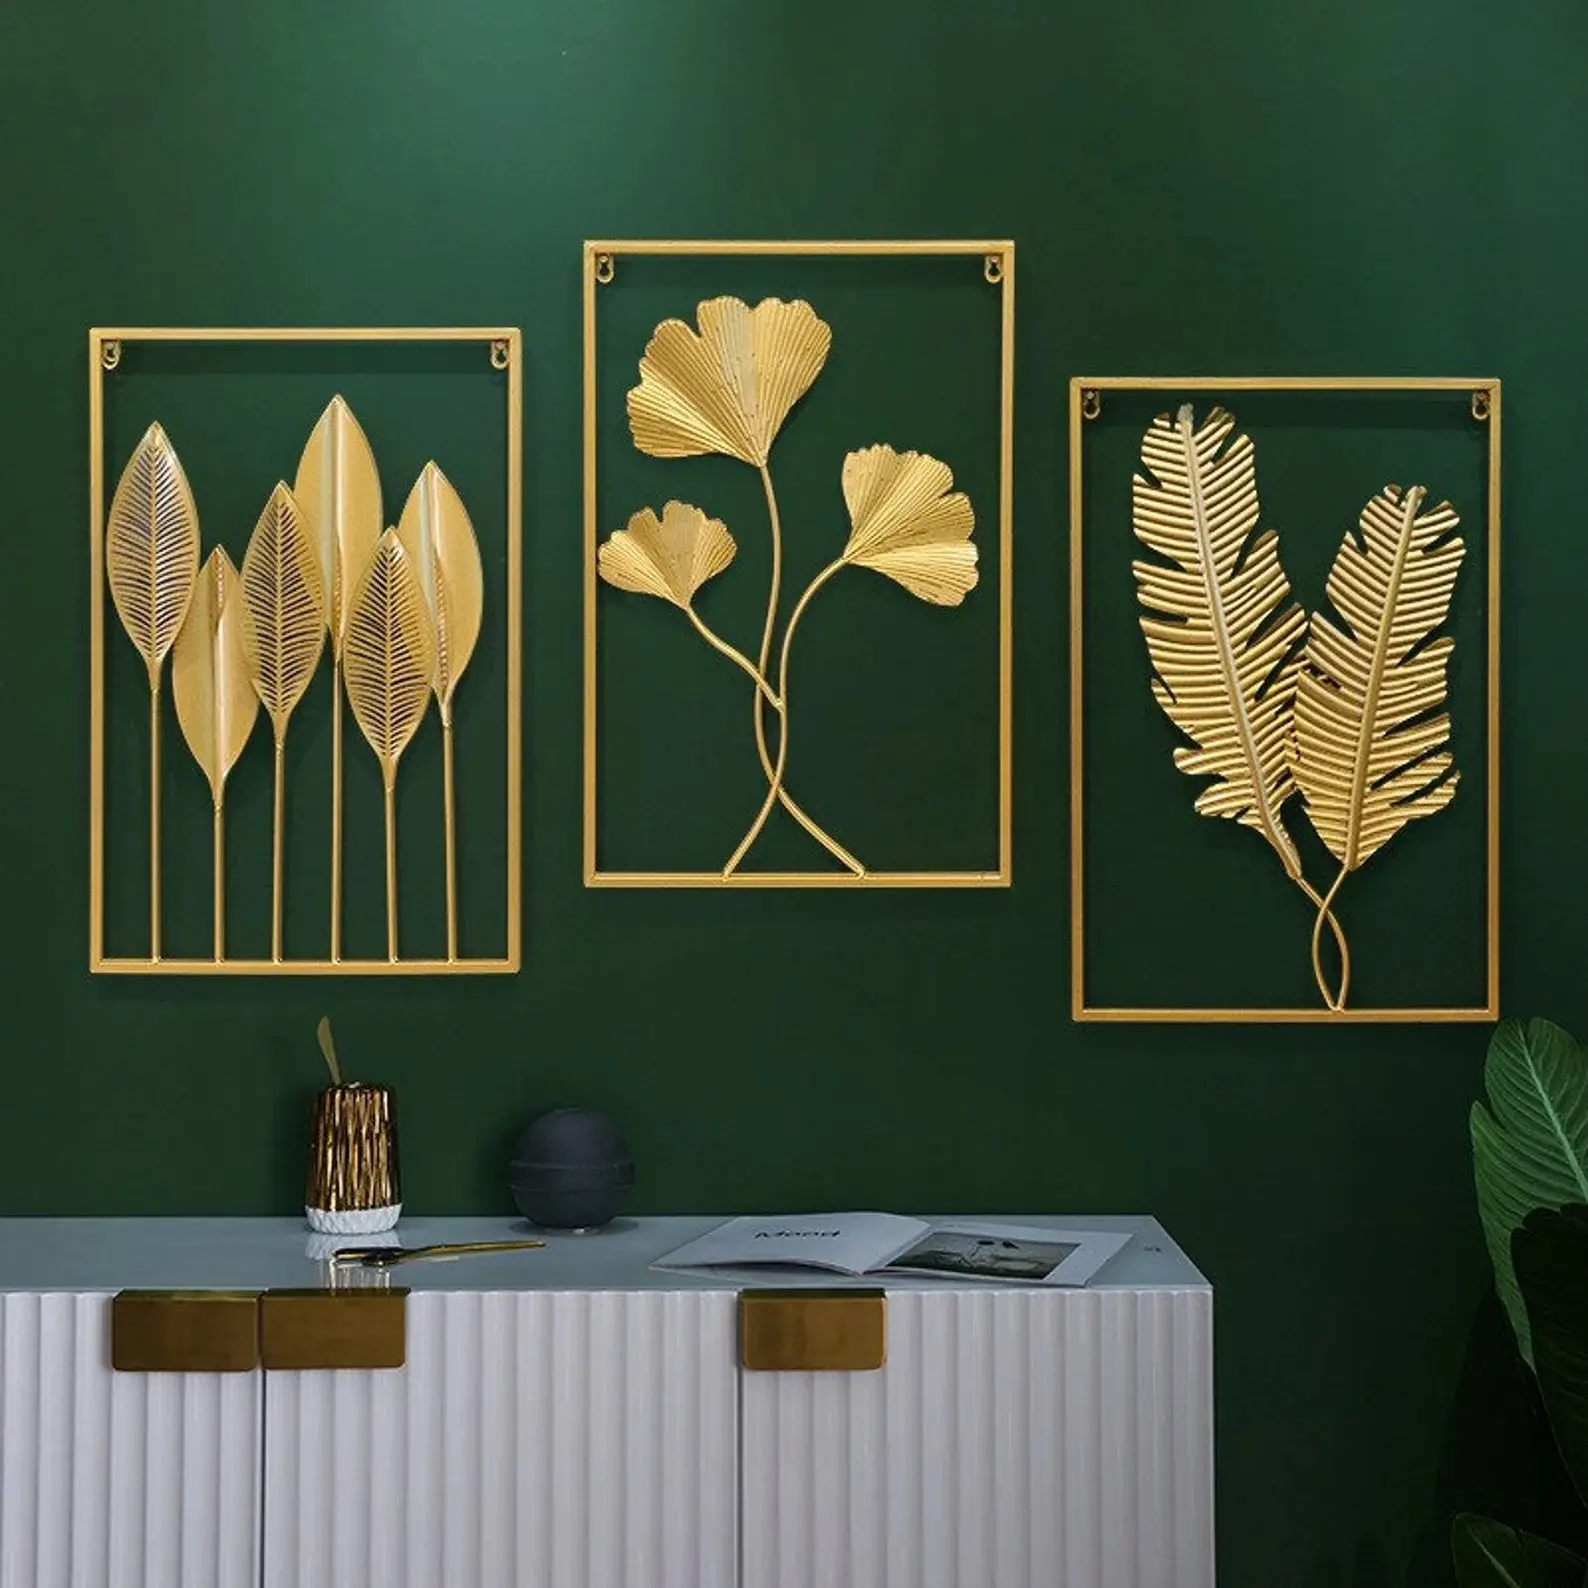 Arte de parede retangular de metal dourado, arte de parede retangular da sala de estar, 3 painéis